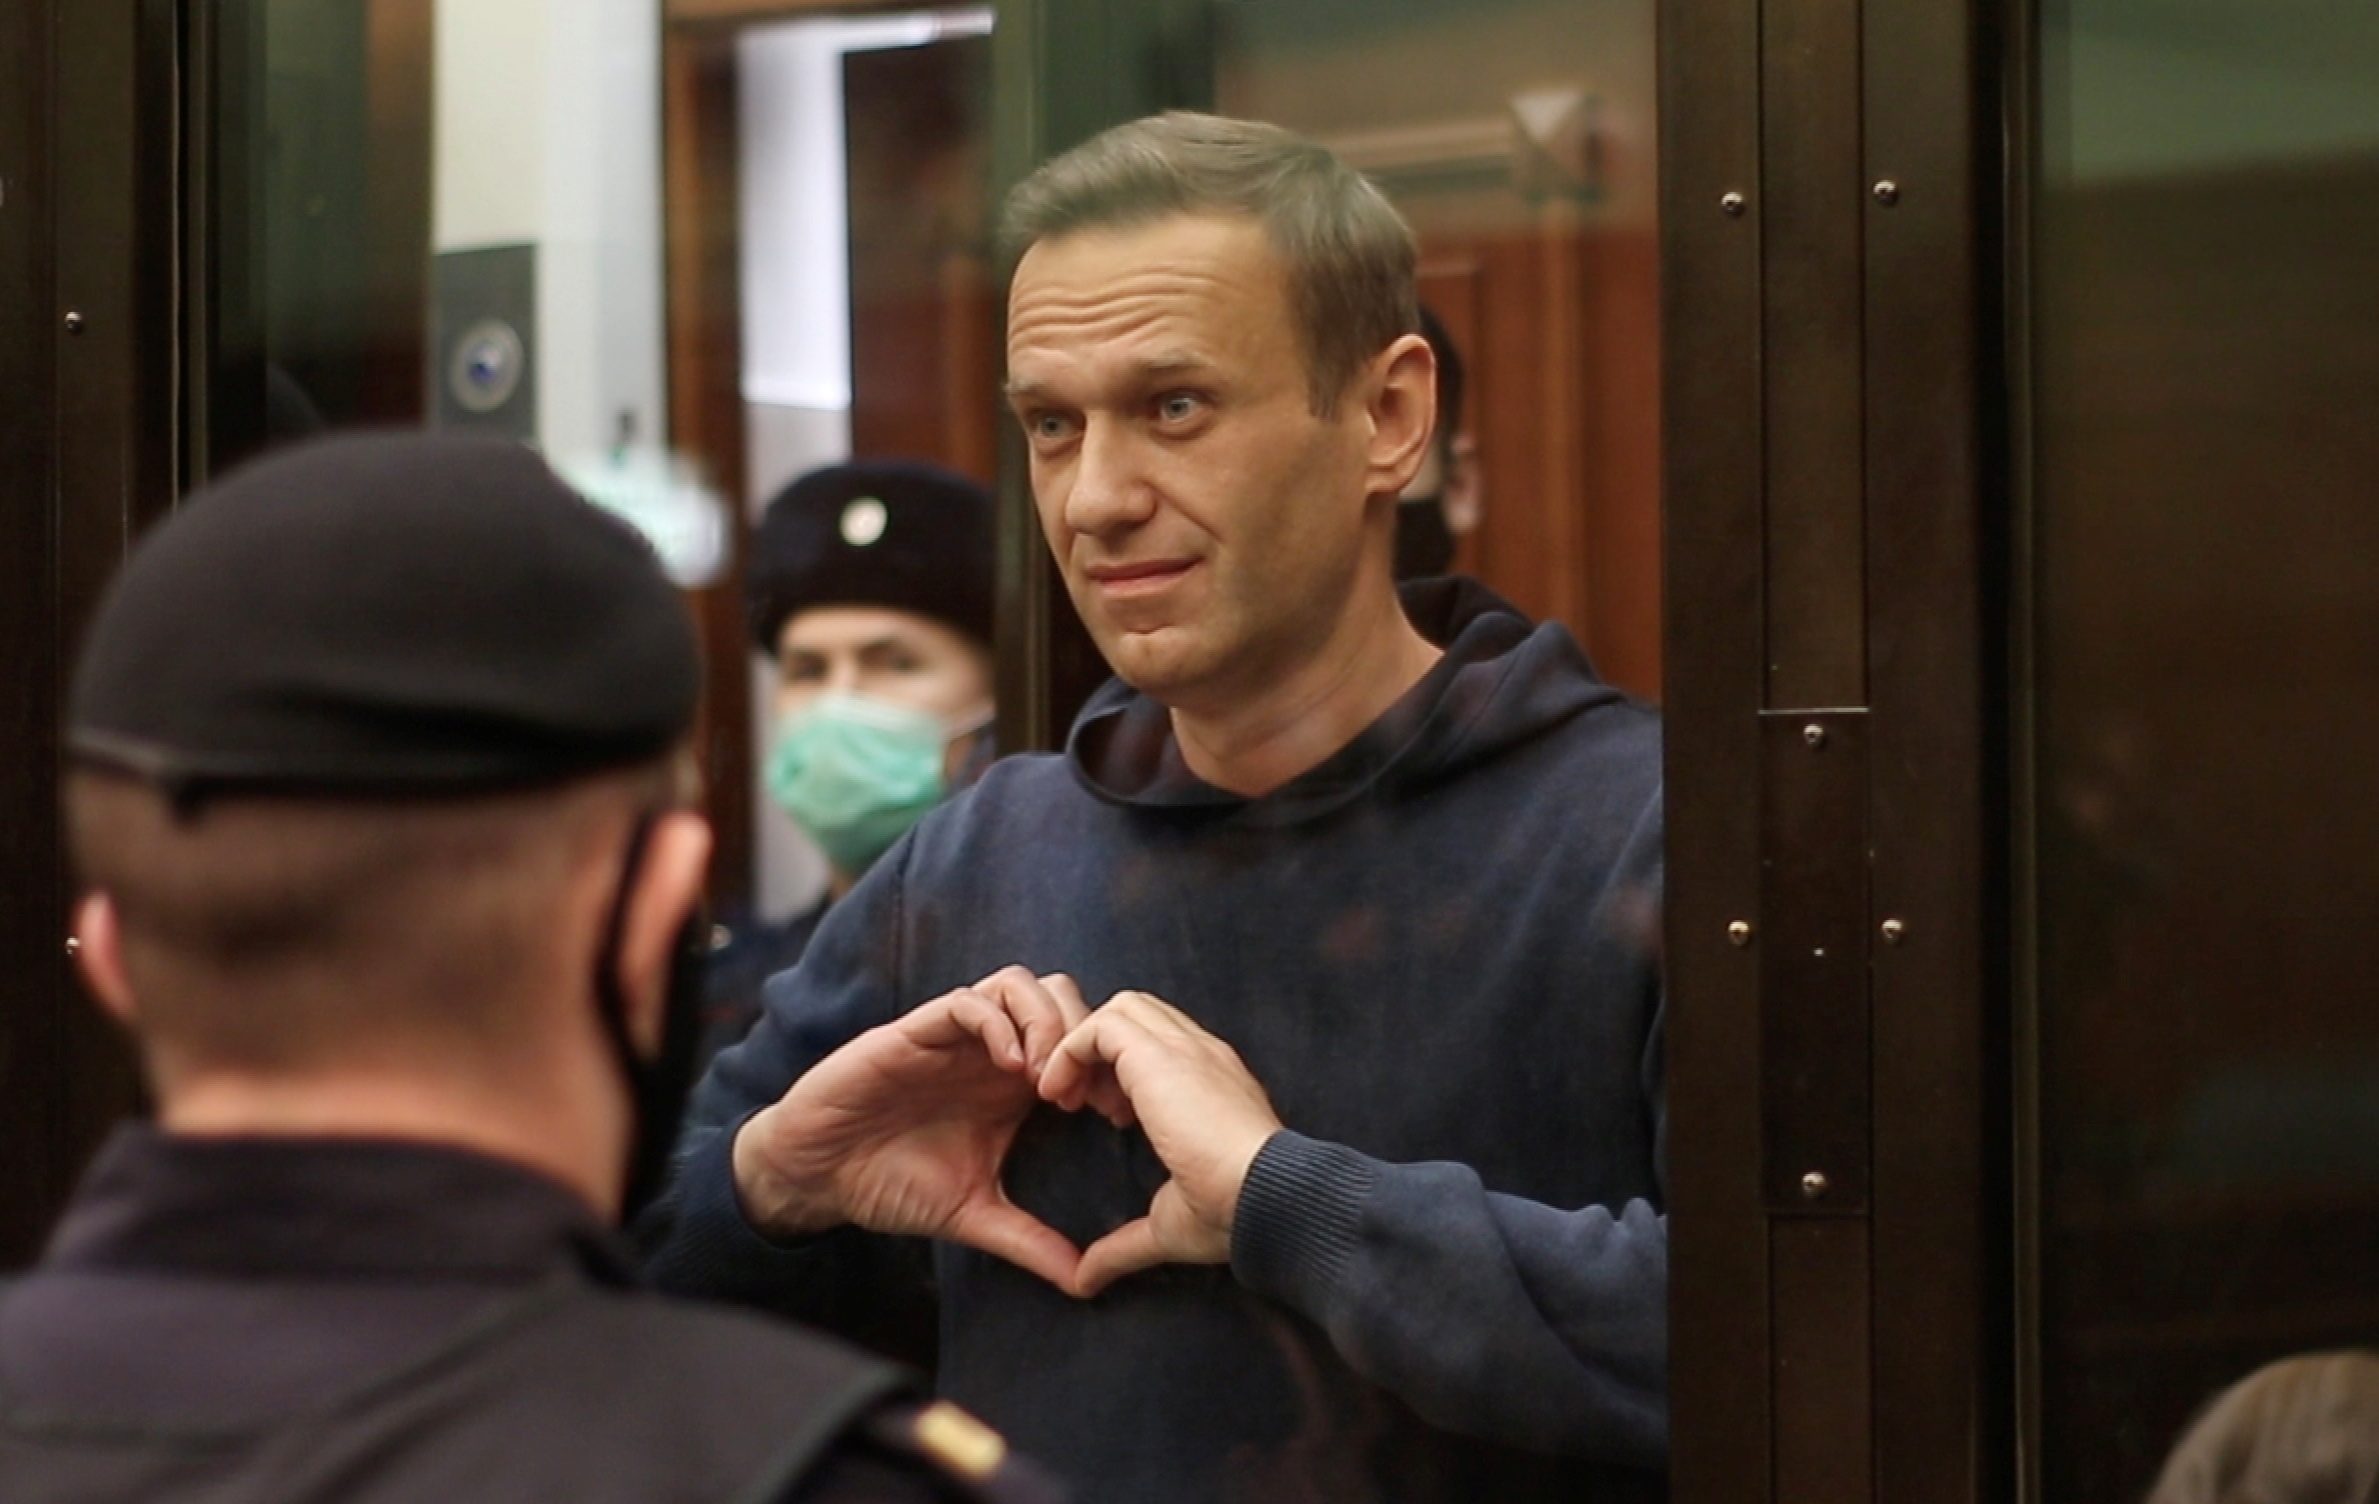 Kremlin critic Alexei Navalny jailed, declares Putin ‘the Underwear Poisoner’